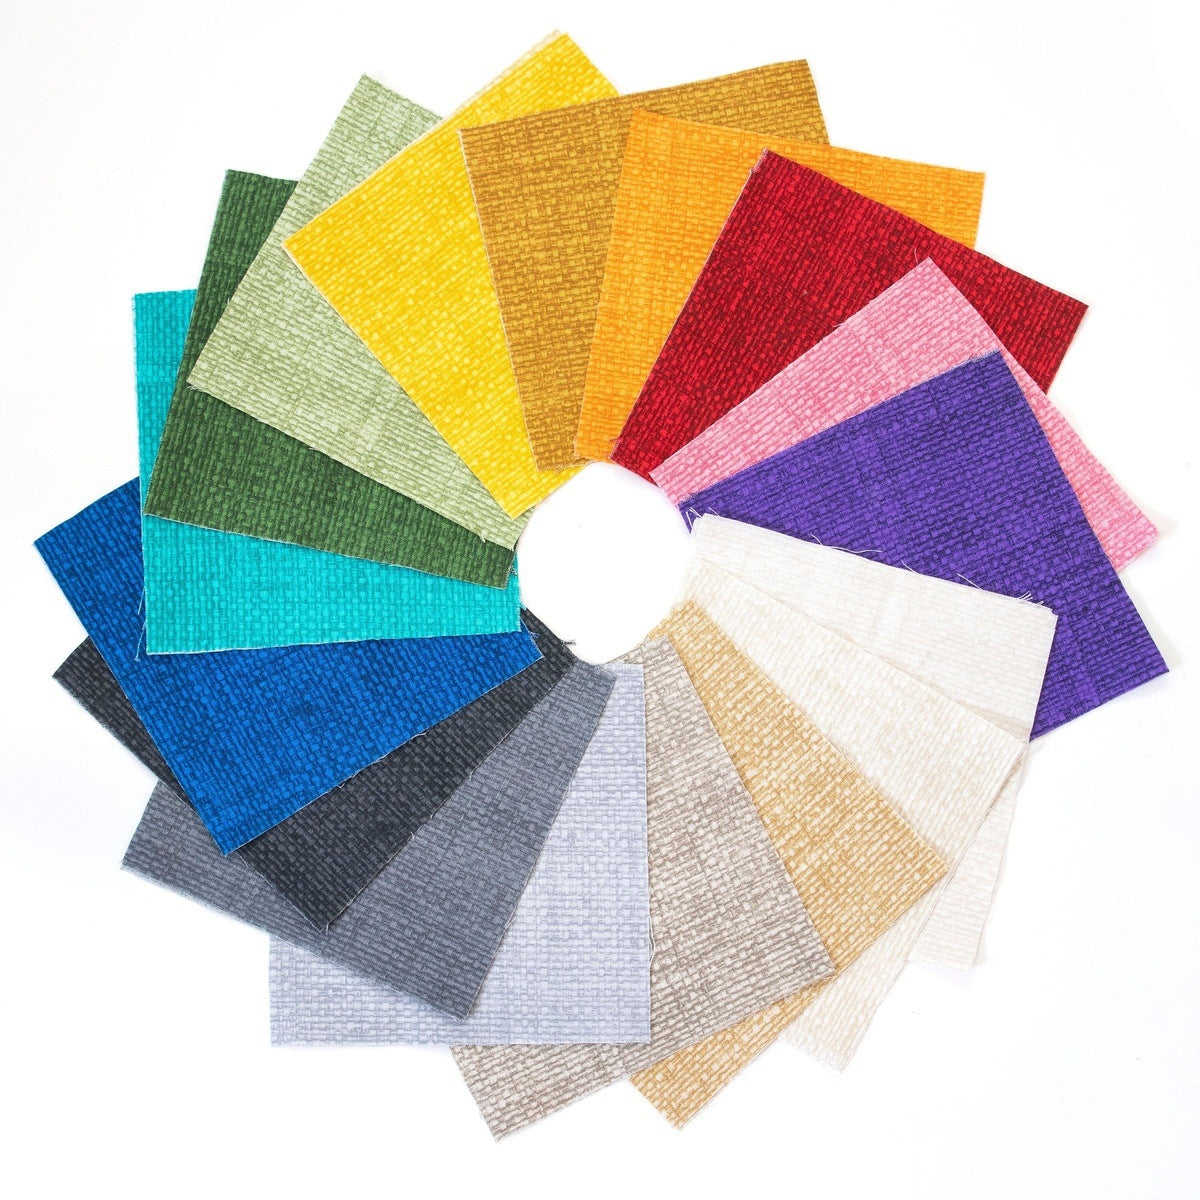 34 Crosshatch Mix pre cut 10" squares 100% cotton fabric quilt